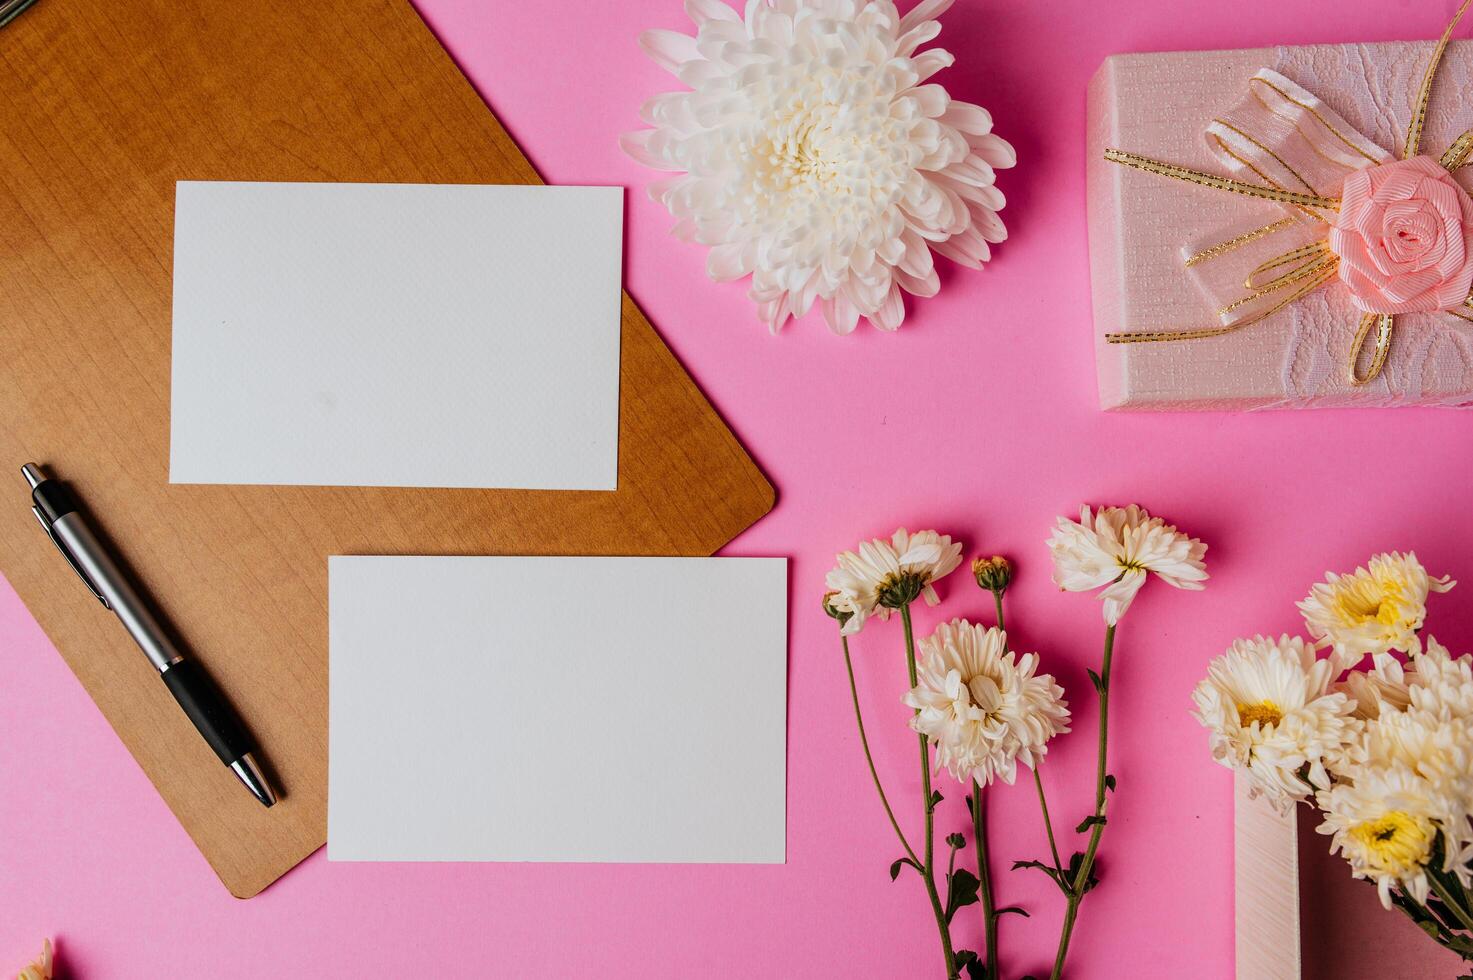 scatola regalo rosa, fiore, penna, tavola di legno e carta bianca su sfondo rosa foto